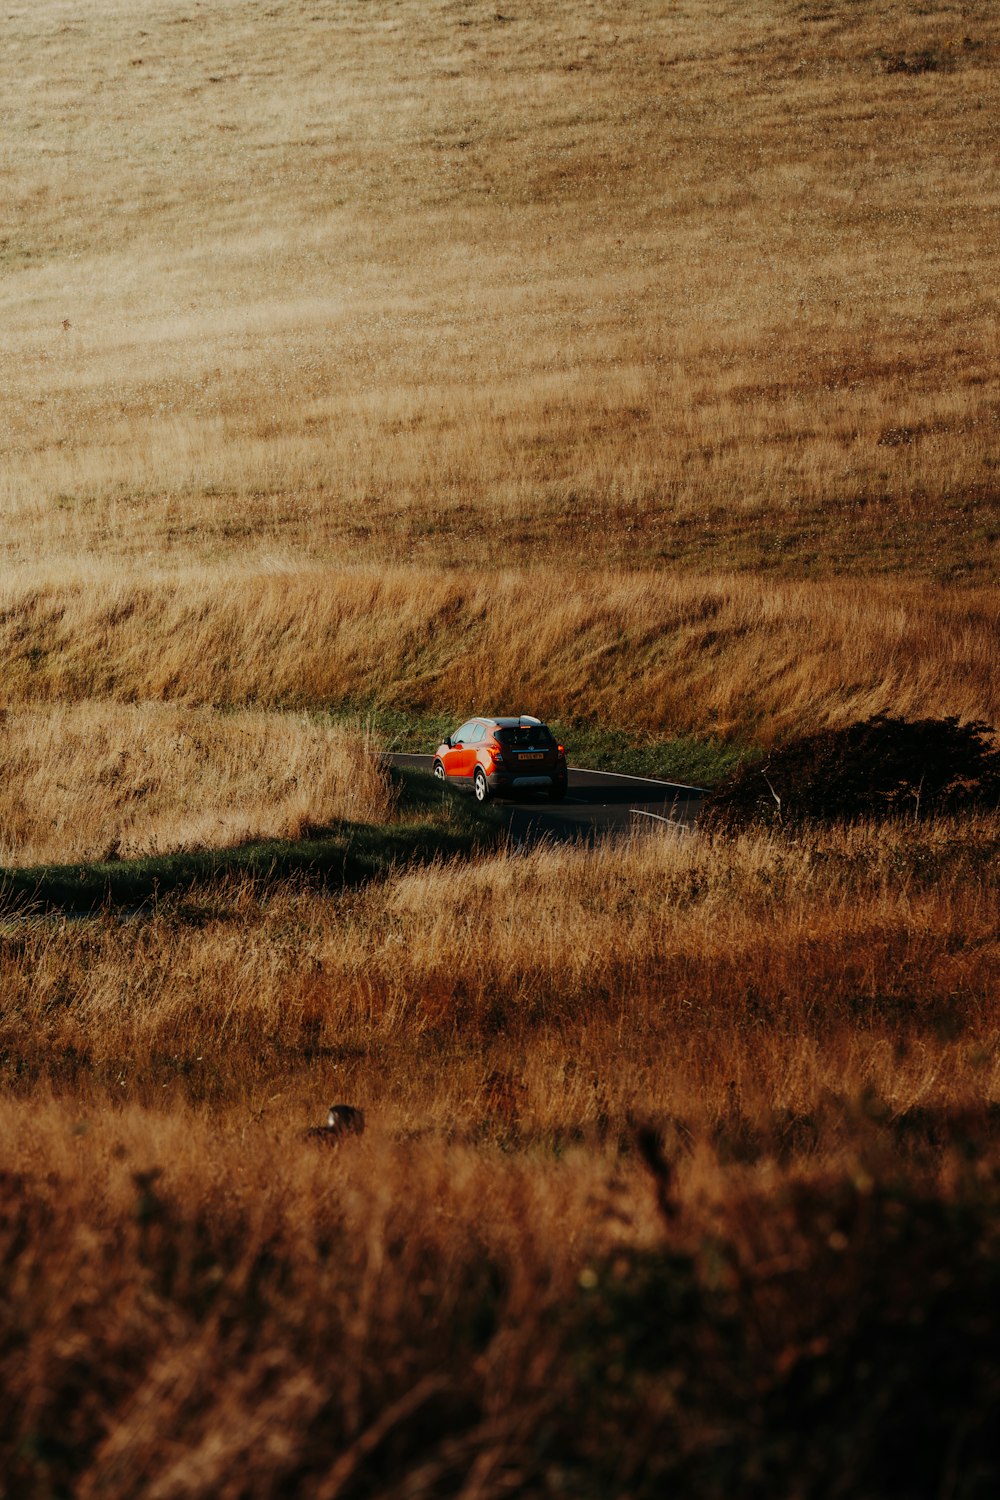 a truck driving through a field of tall grass